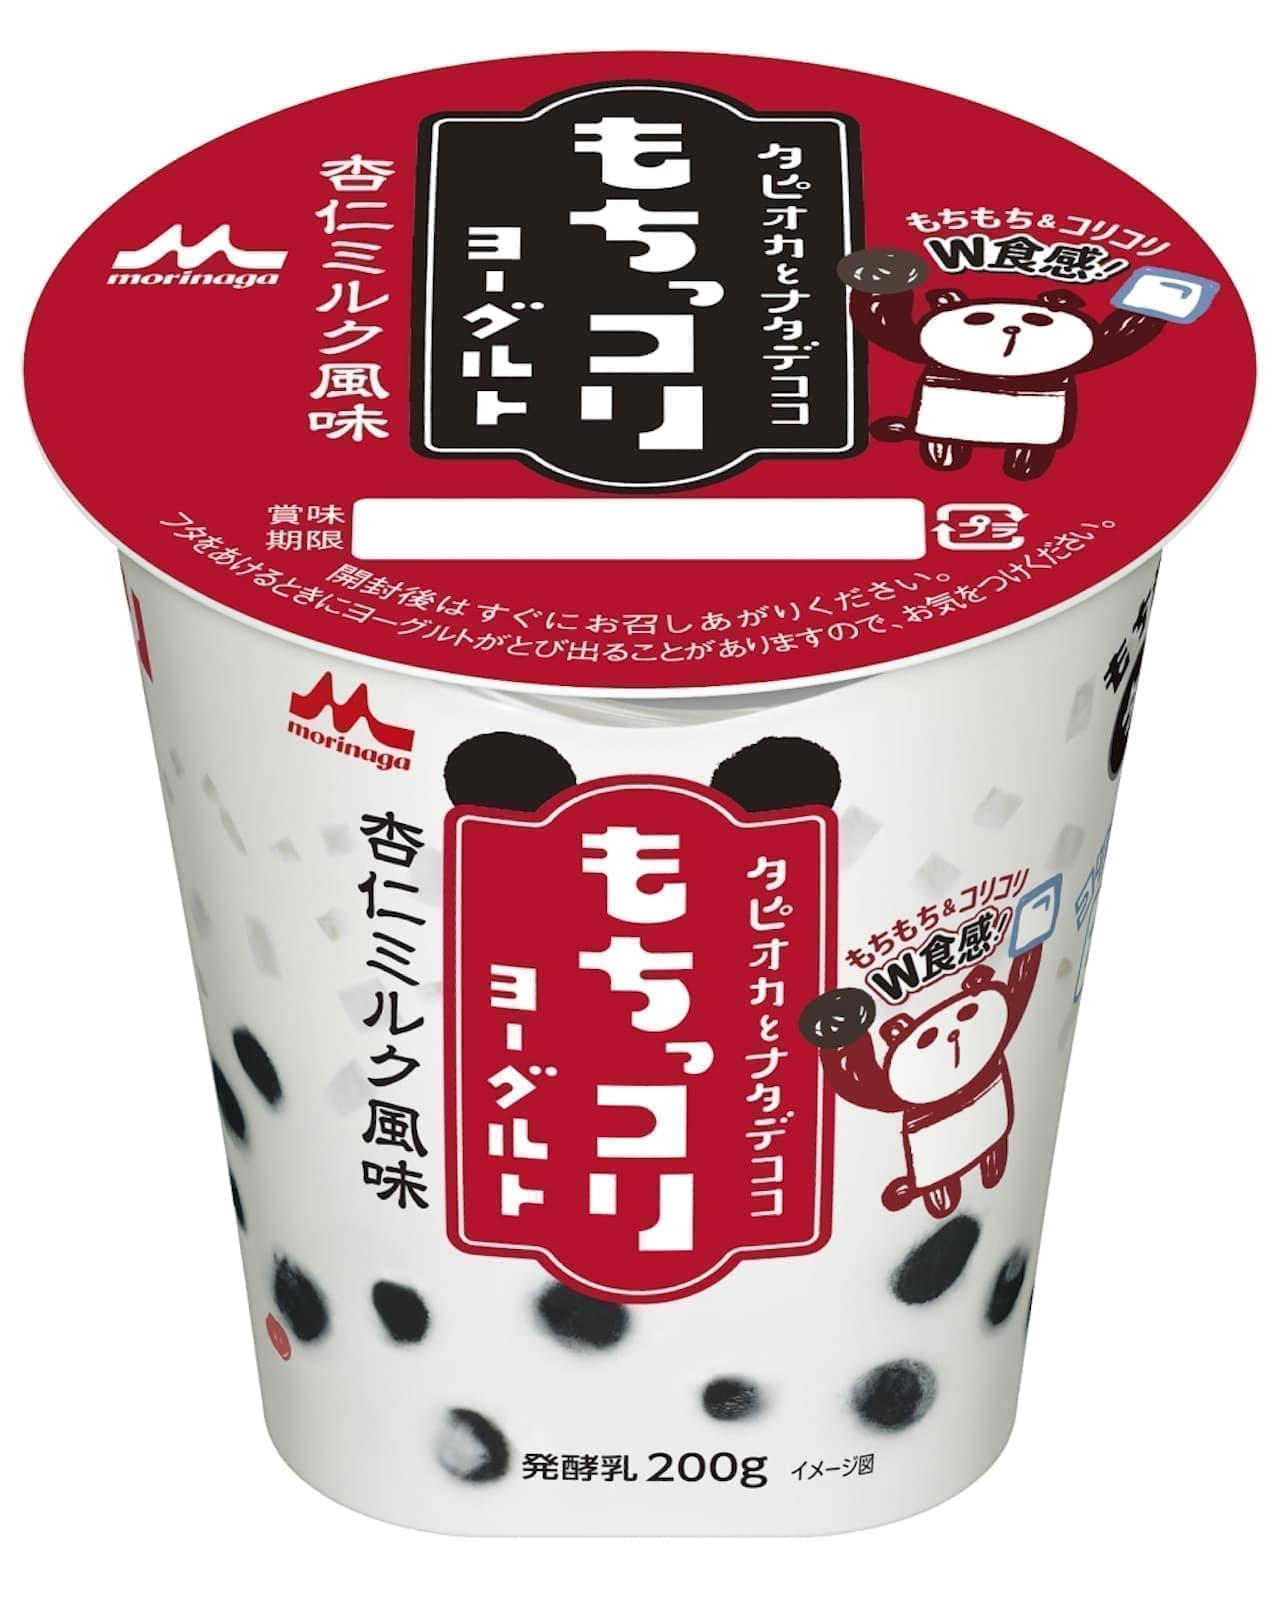 "Mochikkori Yogurt" from Morinaga